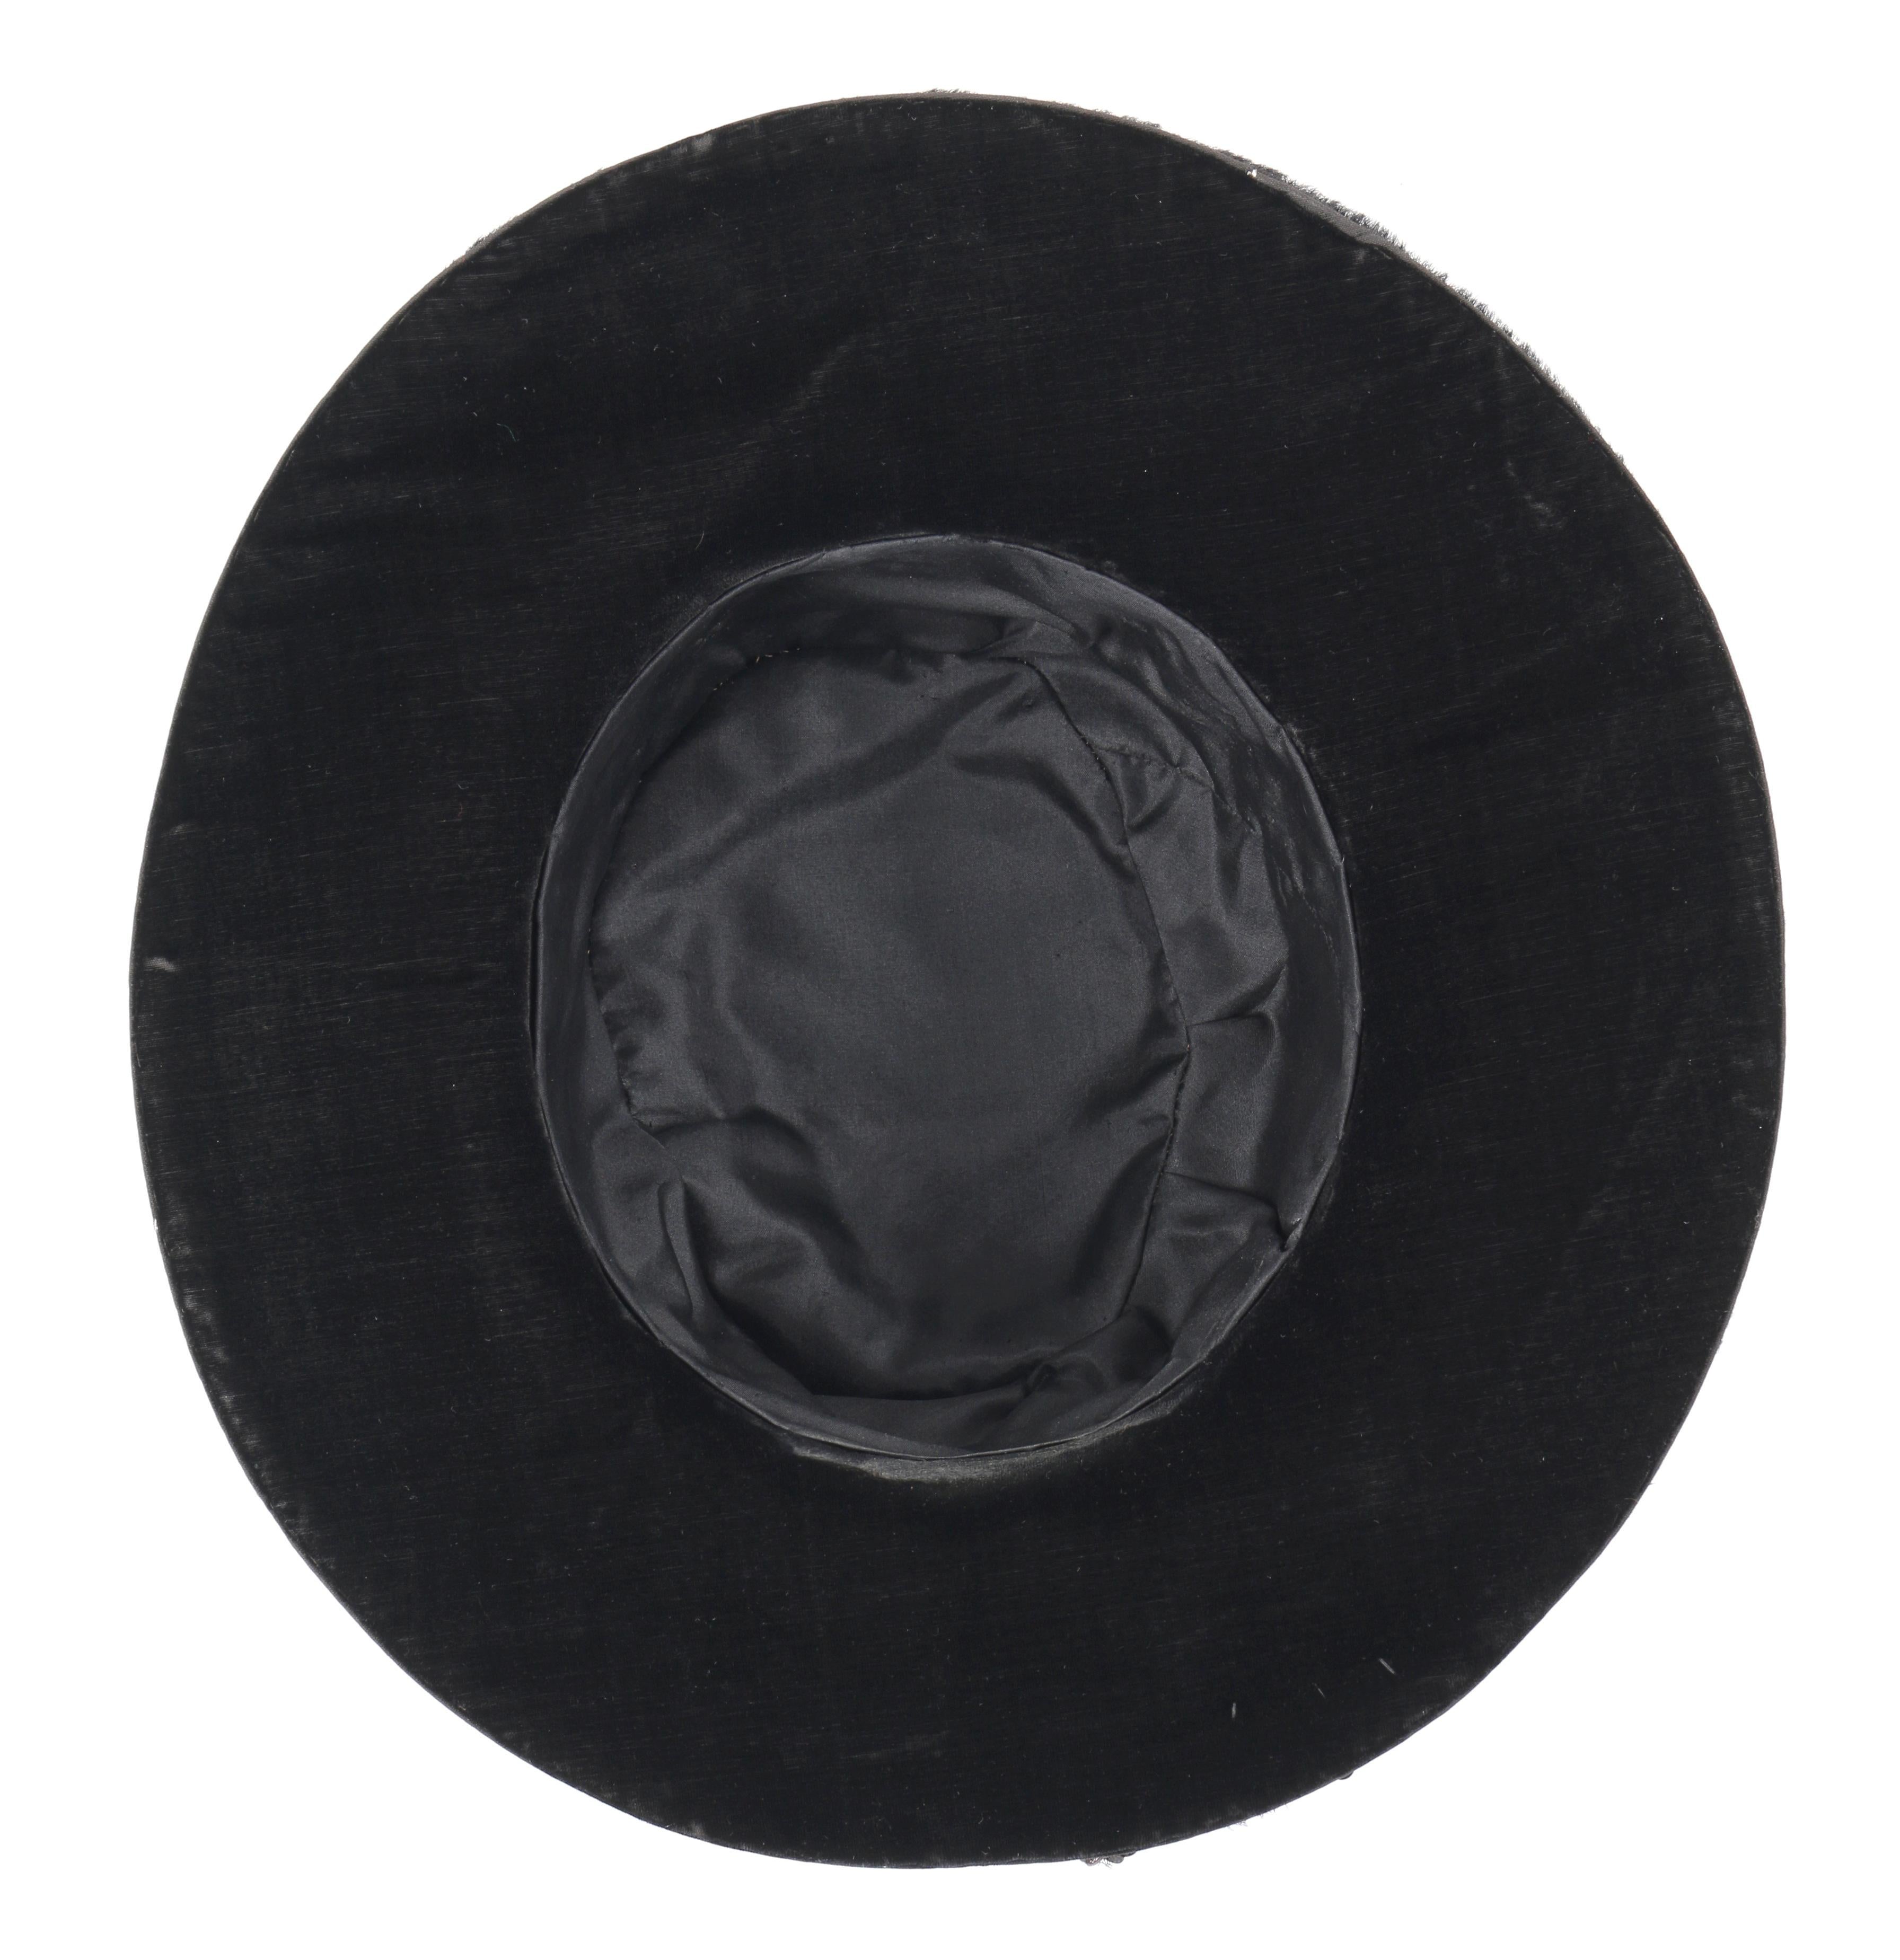 EDWARDIAN c.1900's Black Beaver Fur Felt Sequin Embellished Afternoon Hat 6